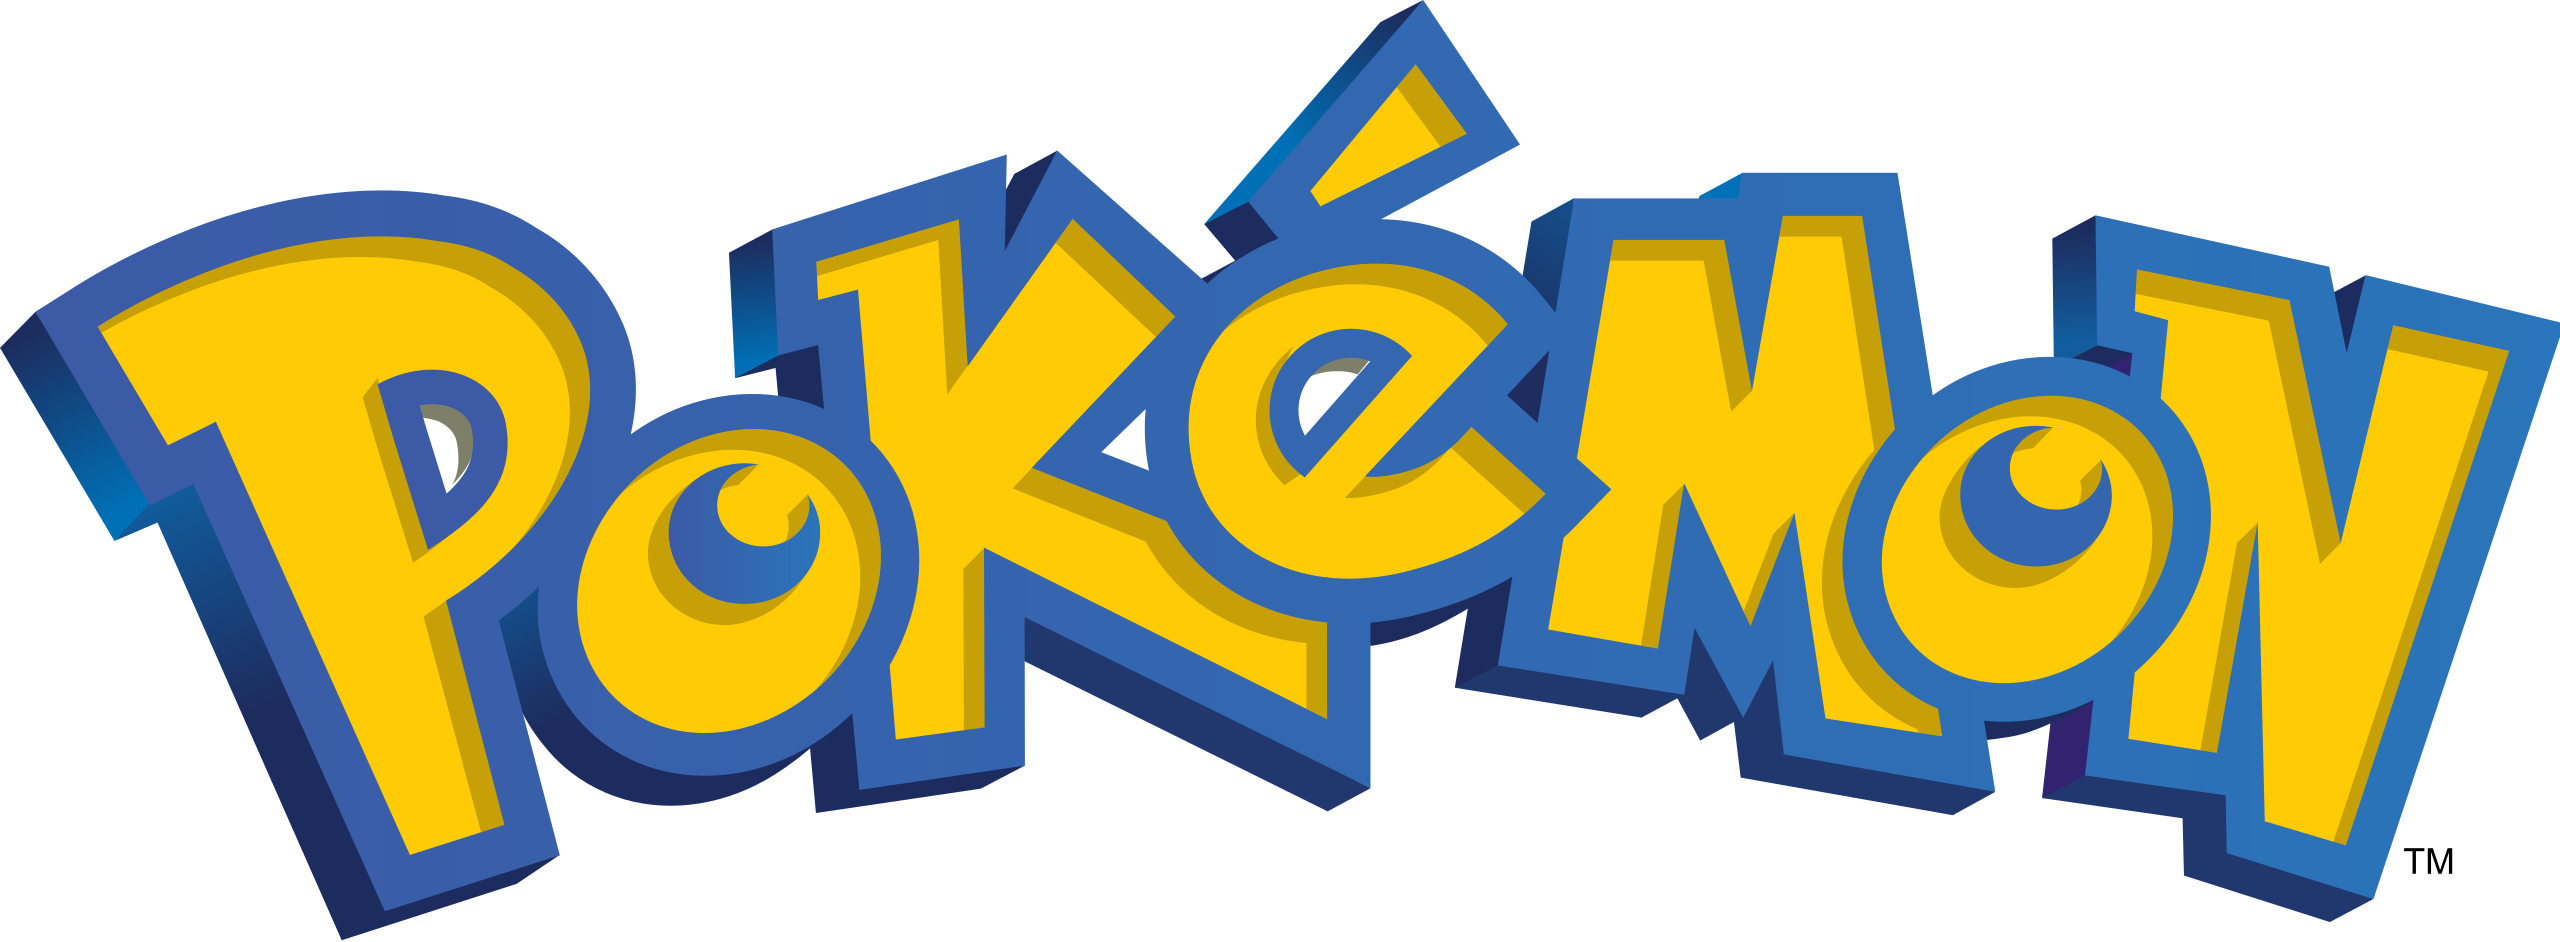 File:International Pokémon logo.svg - Wikimedia Commons